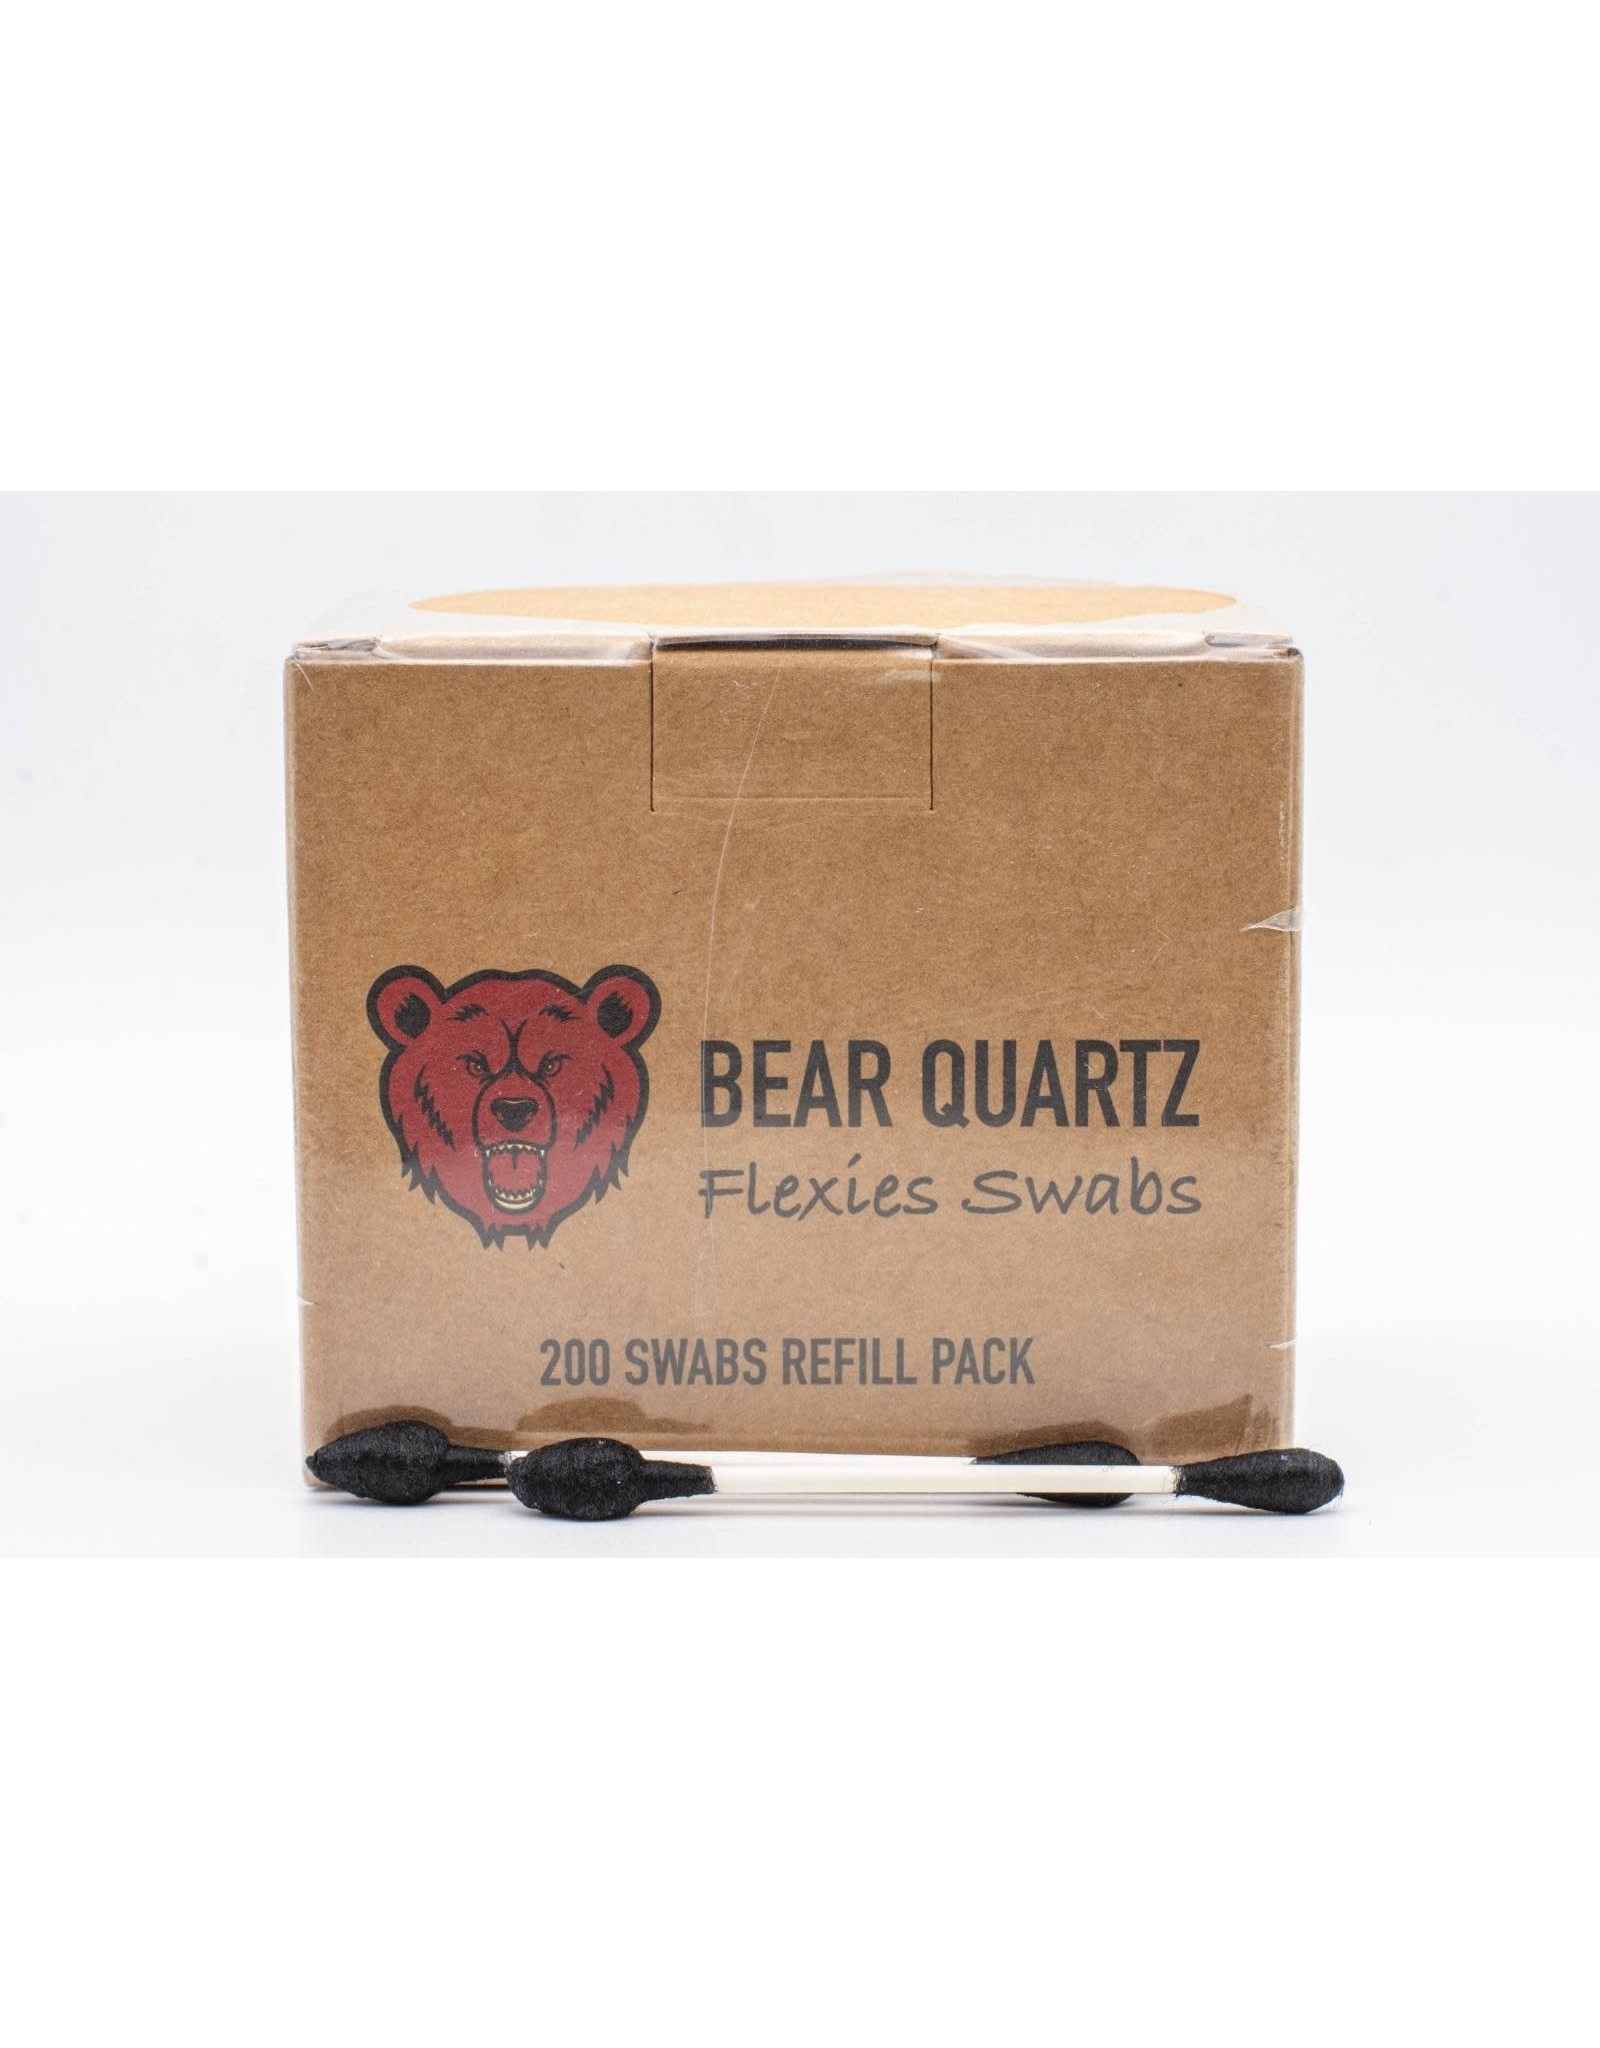 Bear Quartz Bear Quartz Flexies Swabs Refill Box